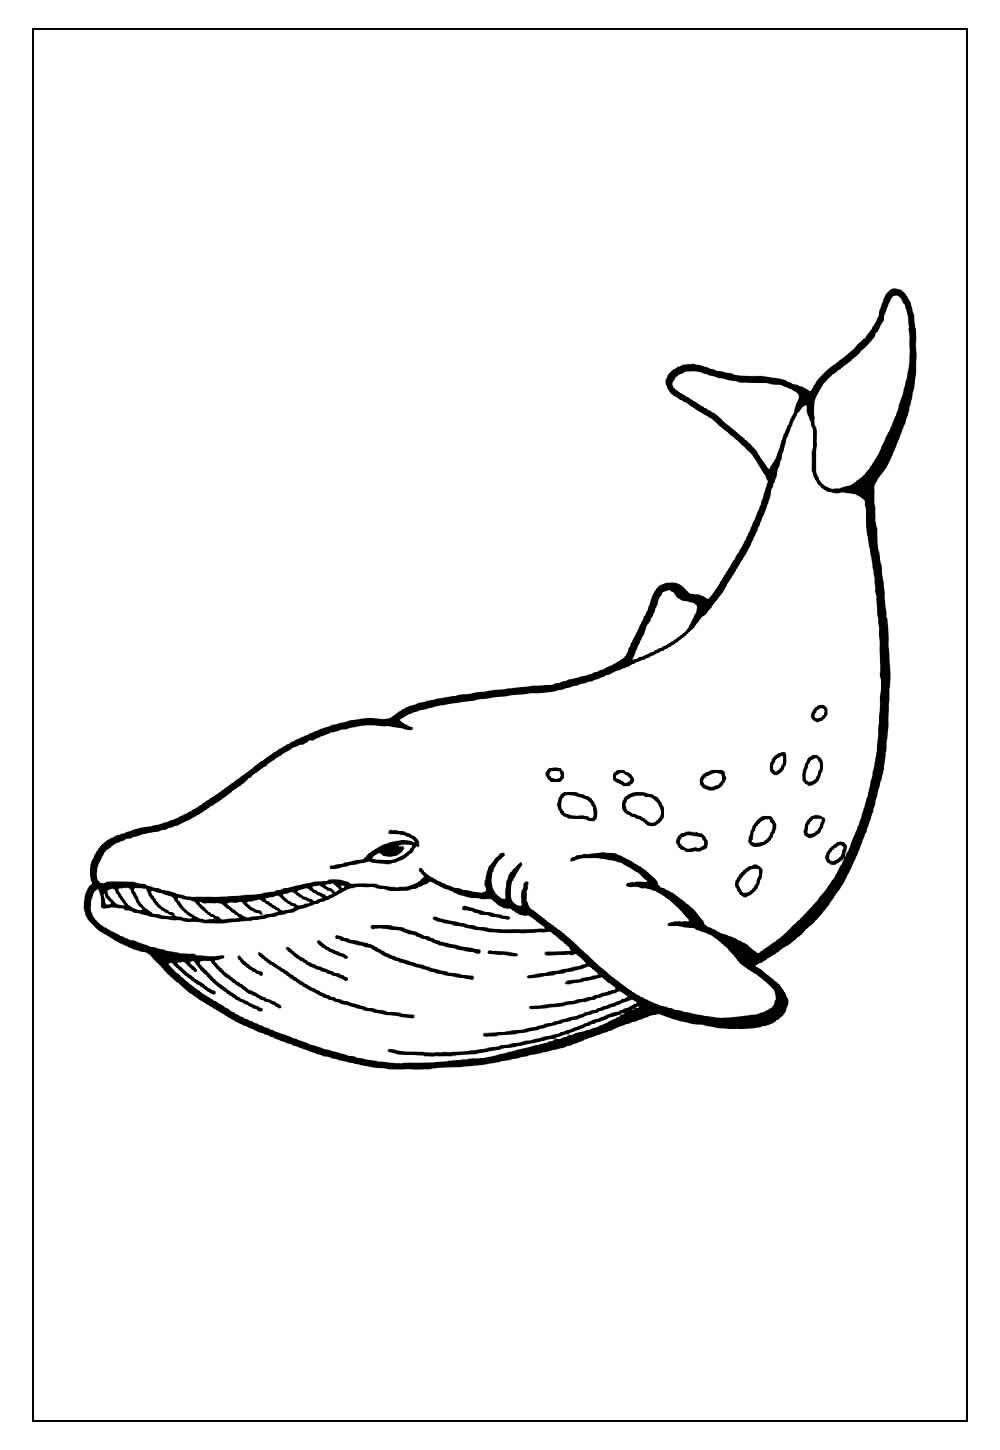 Desenho Para Colorir baleia - Imagens Grátis Para Imprimir - img 19454